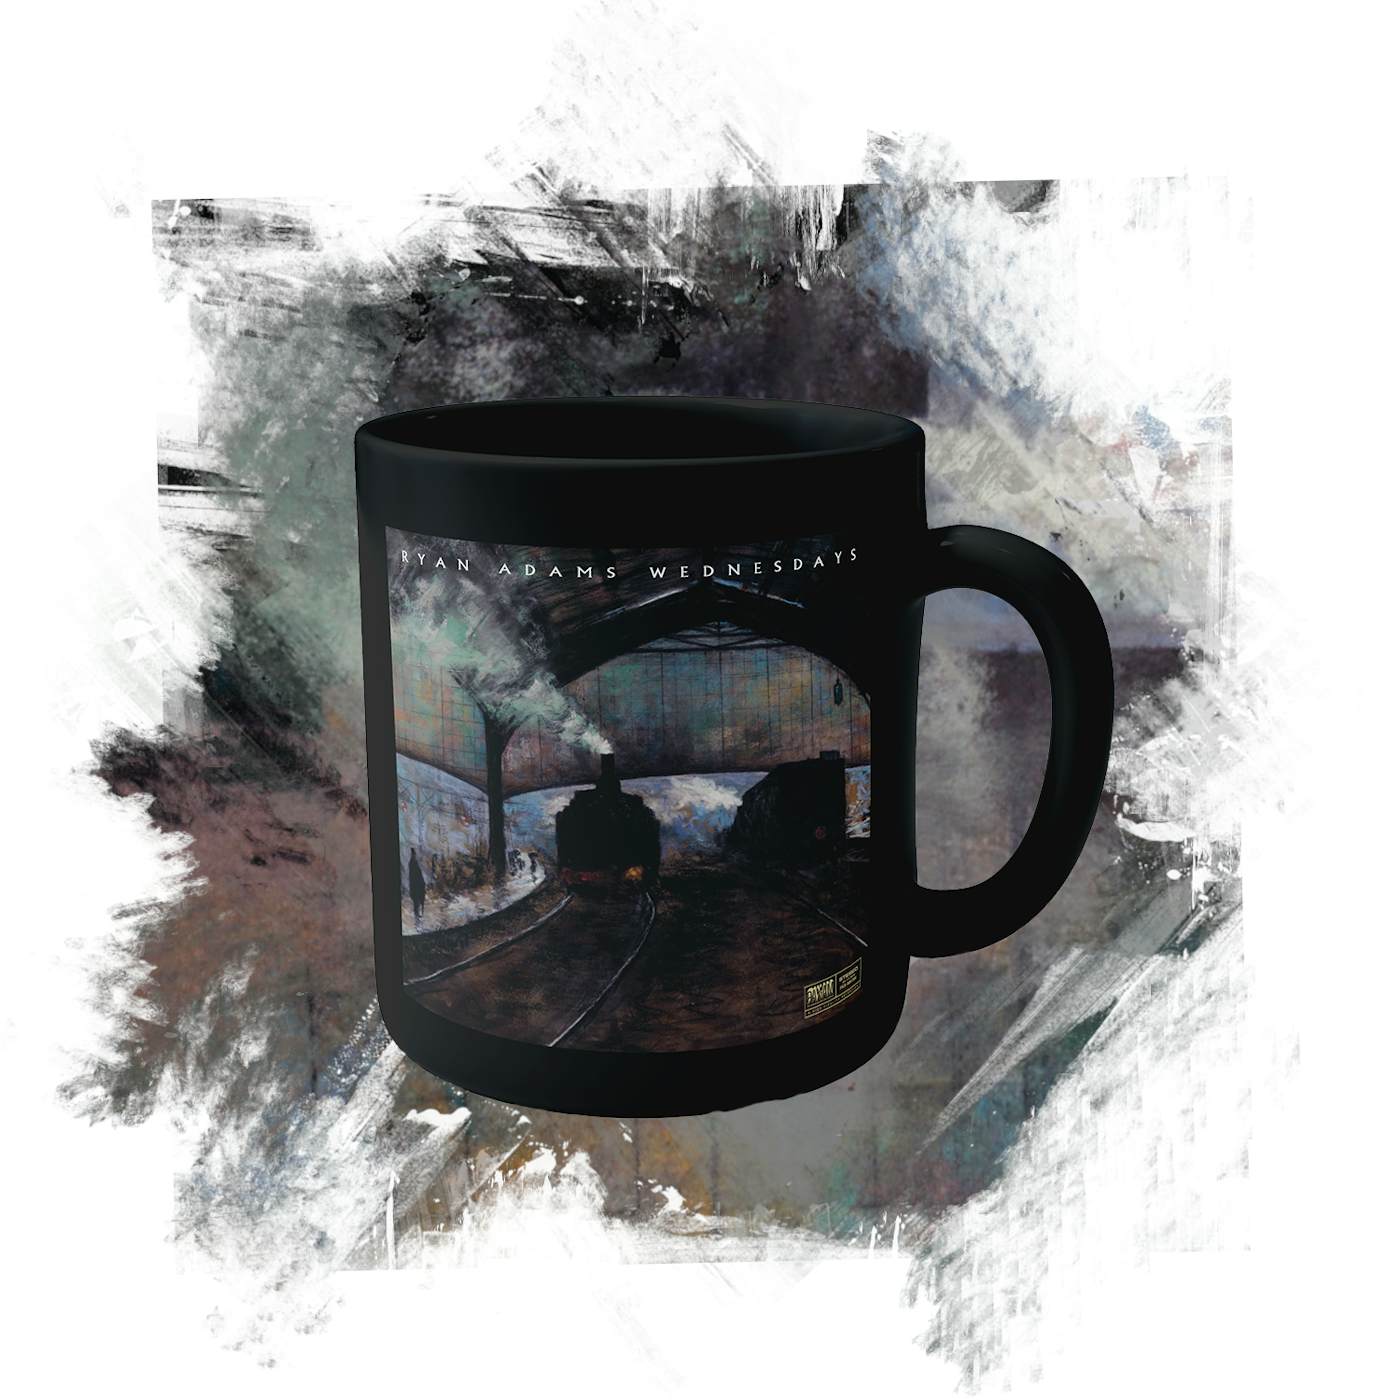 Ryan Adams Wednesdays Black Coffee Mug